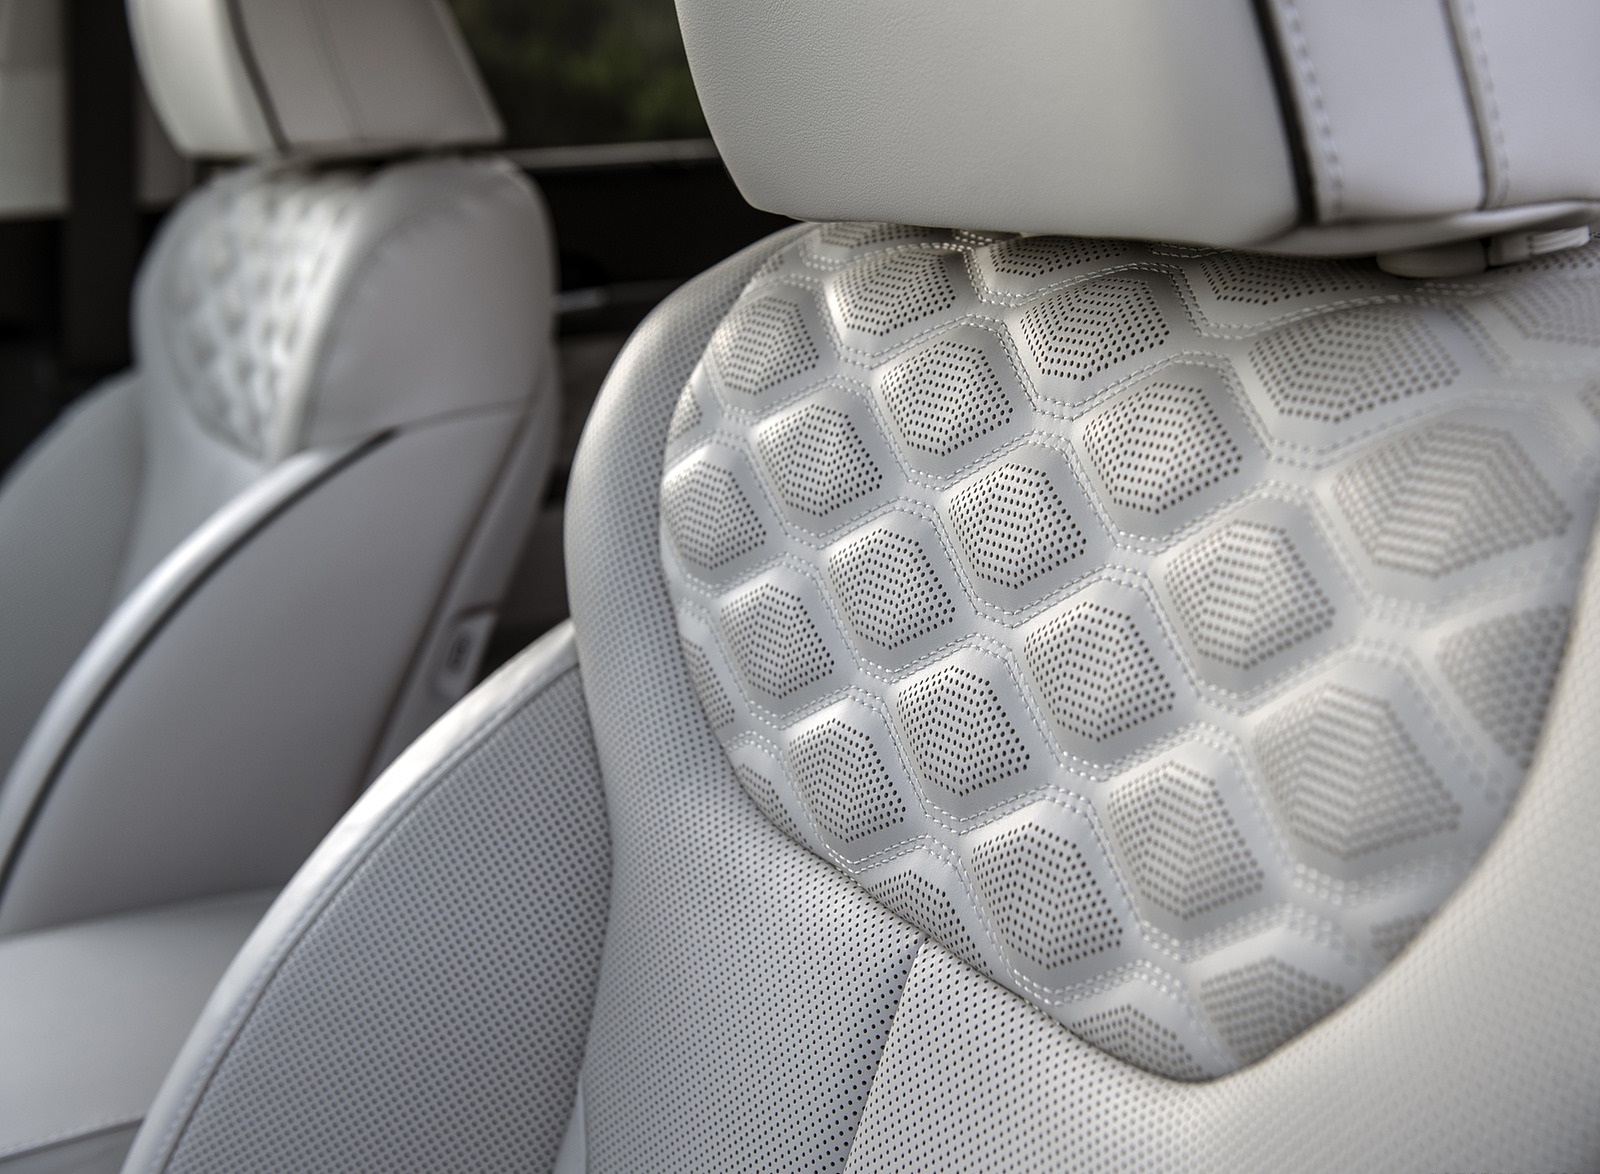 2021 Hyundai Palisade Interior Seats Wallpapers #62 of 70